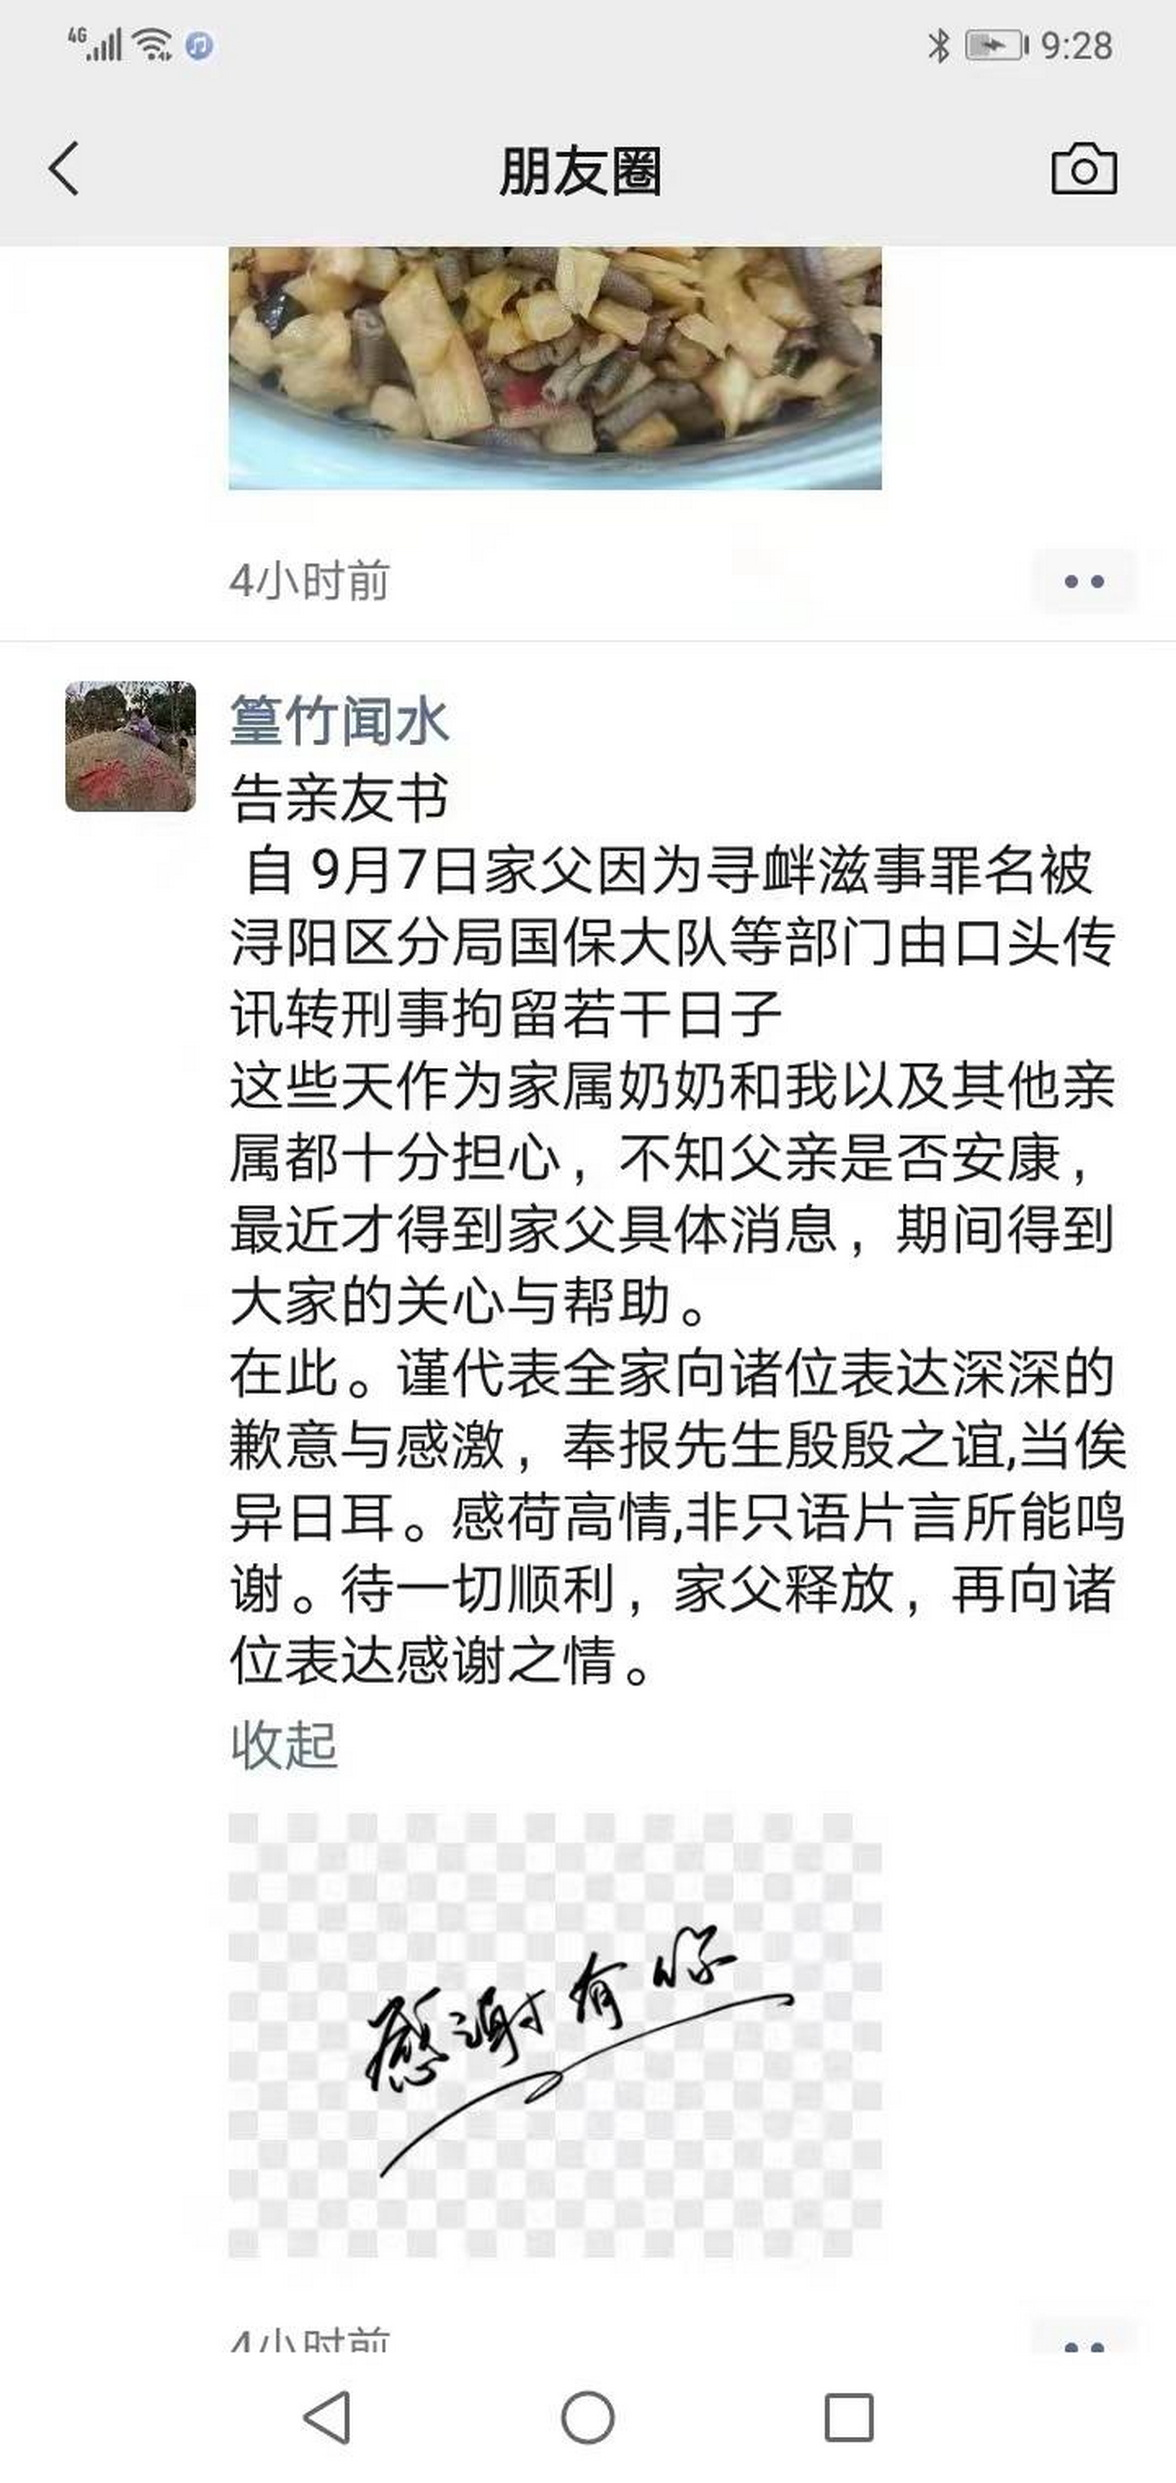 江西公民李玉荣被抓捕，其女儿在微信朋友圈发出“告亲友书”并感谢亲友的关心与帮助。.png